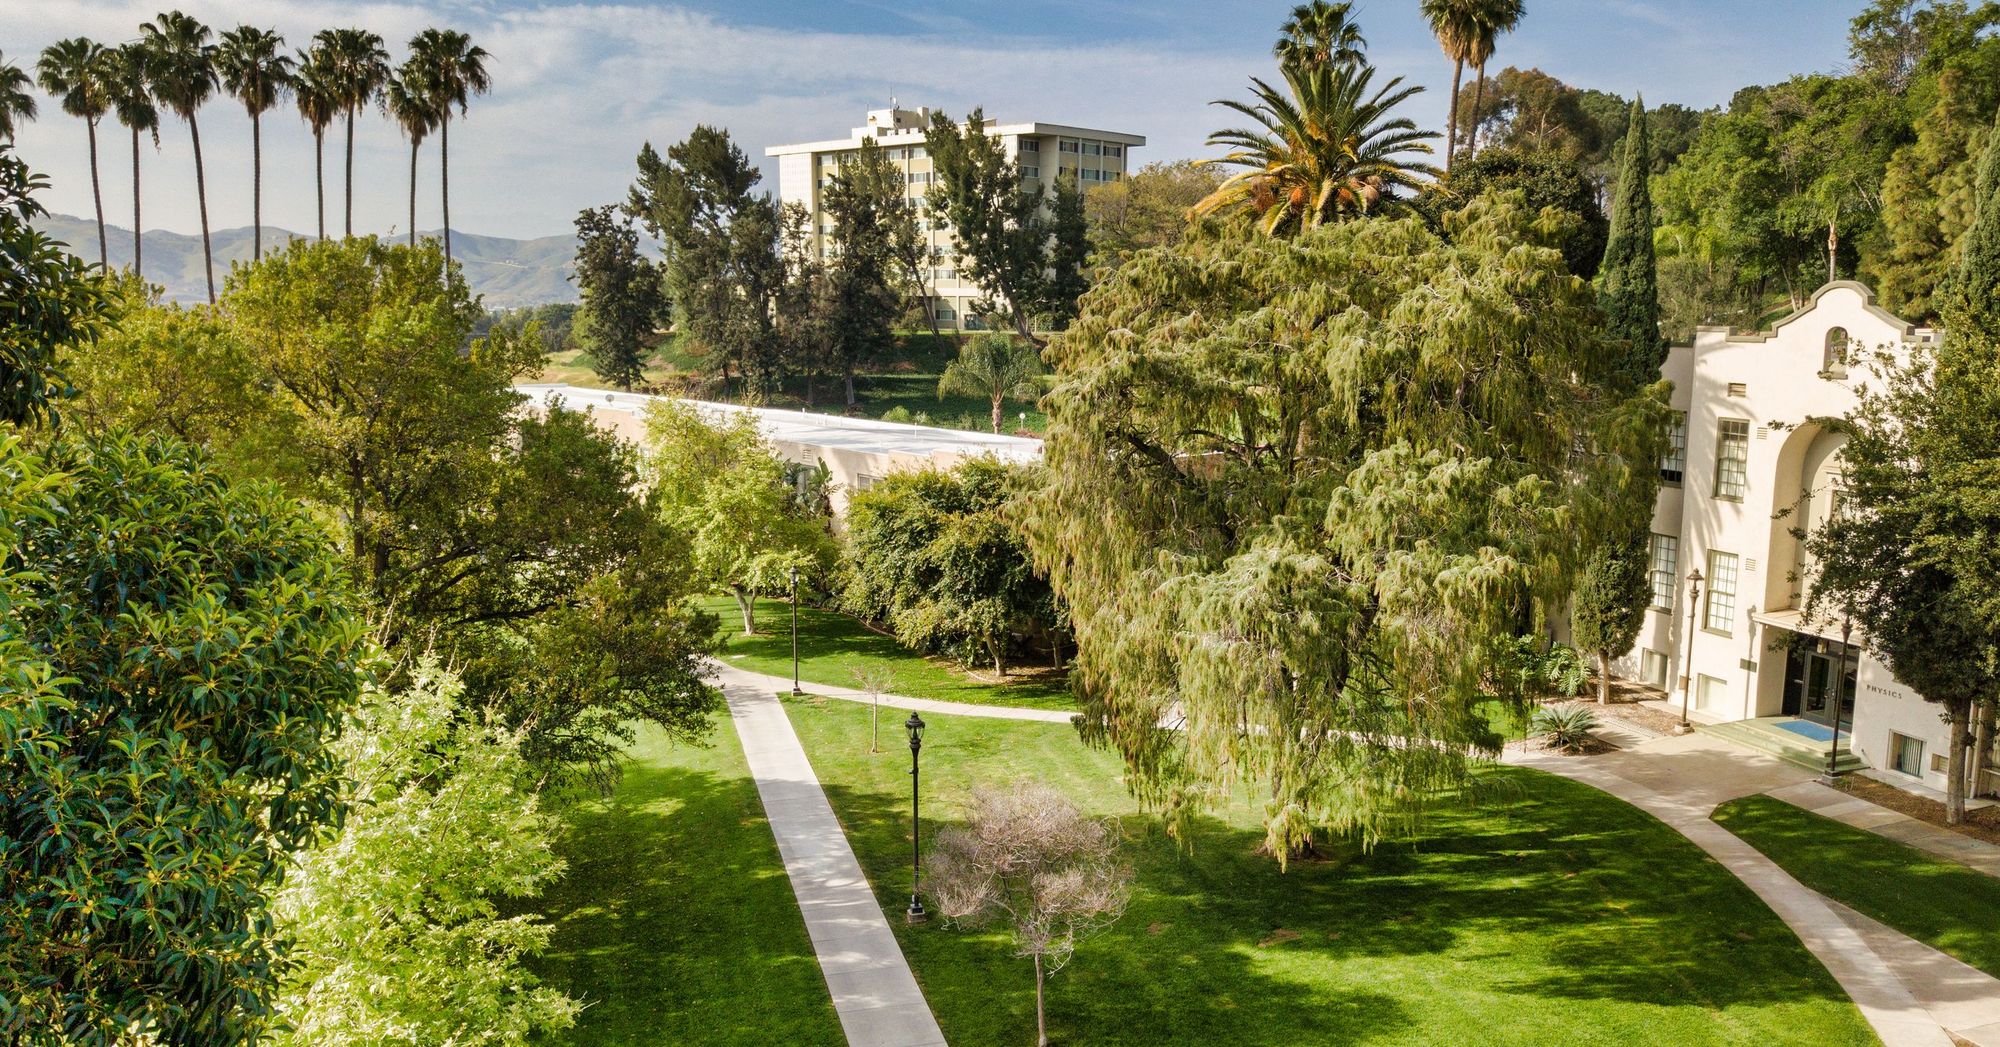 La Sierra University - Riverside, CA